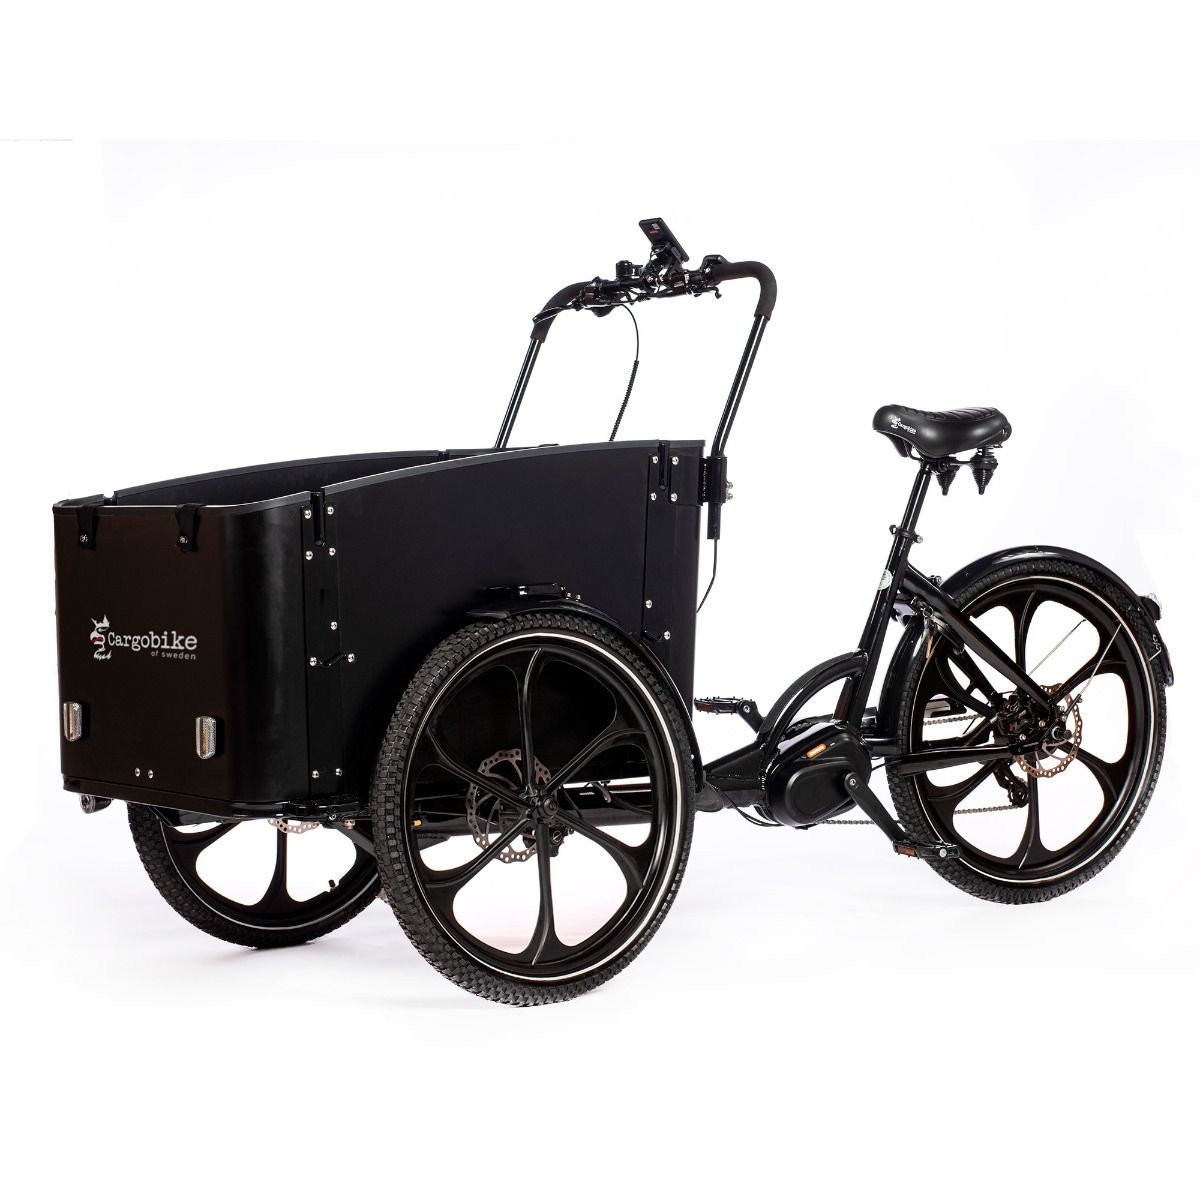 Cargobike of Sweden Delight Premium El-ladcykel